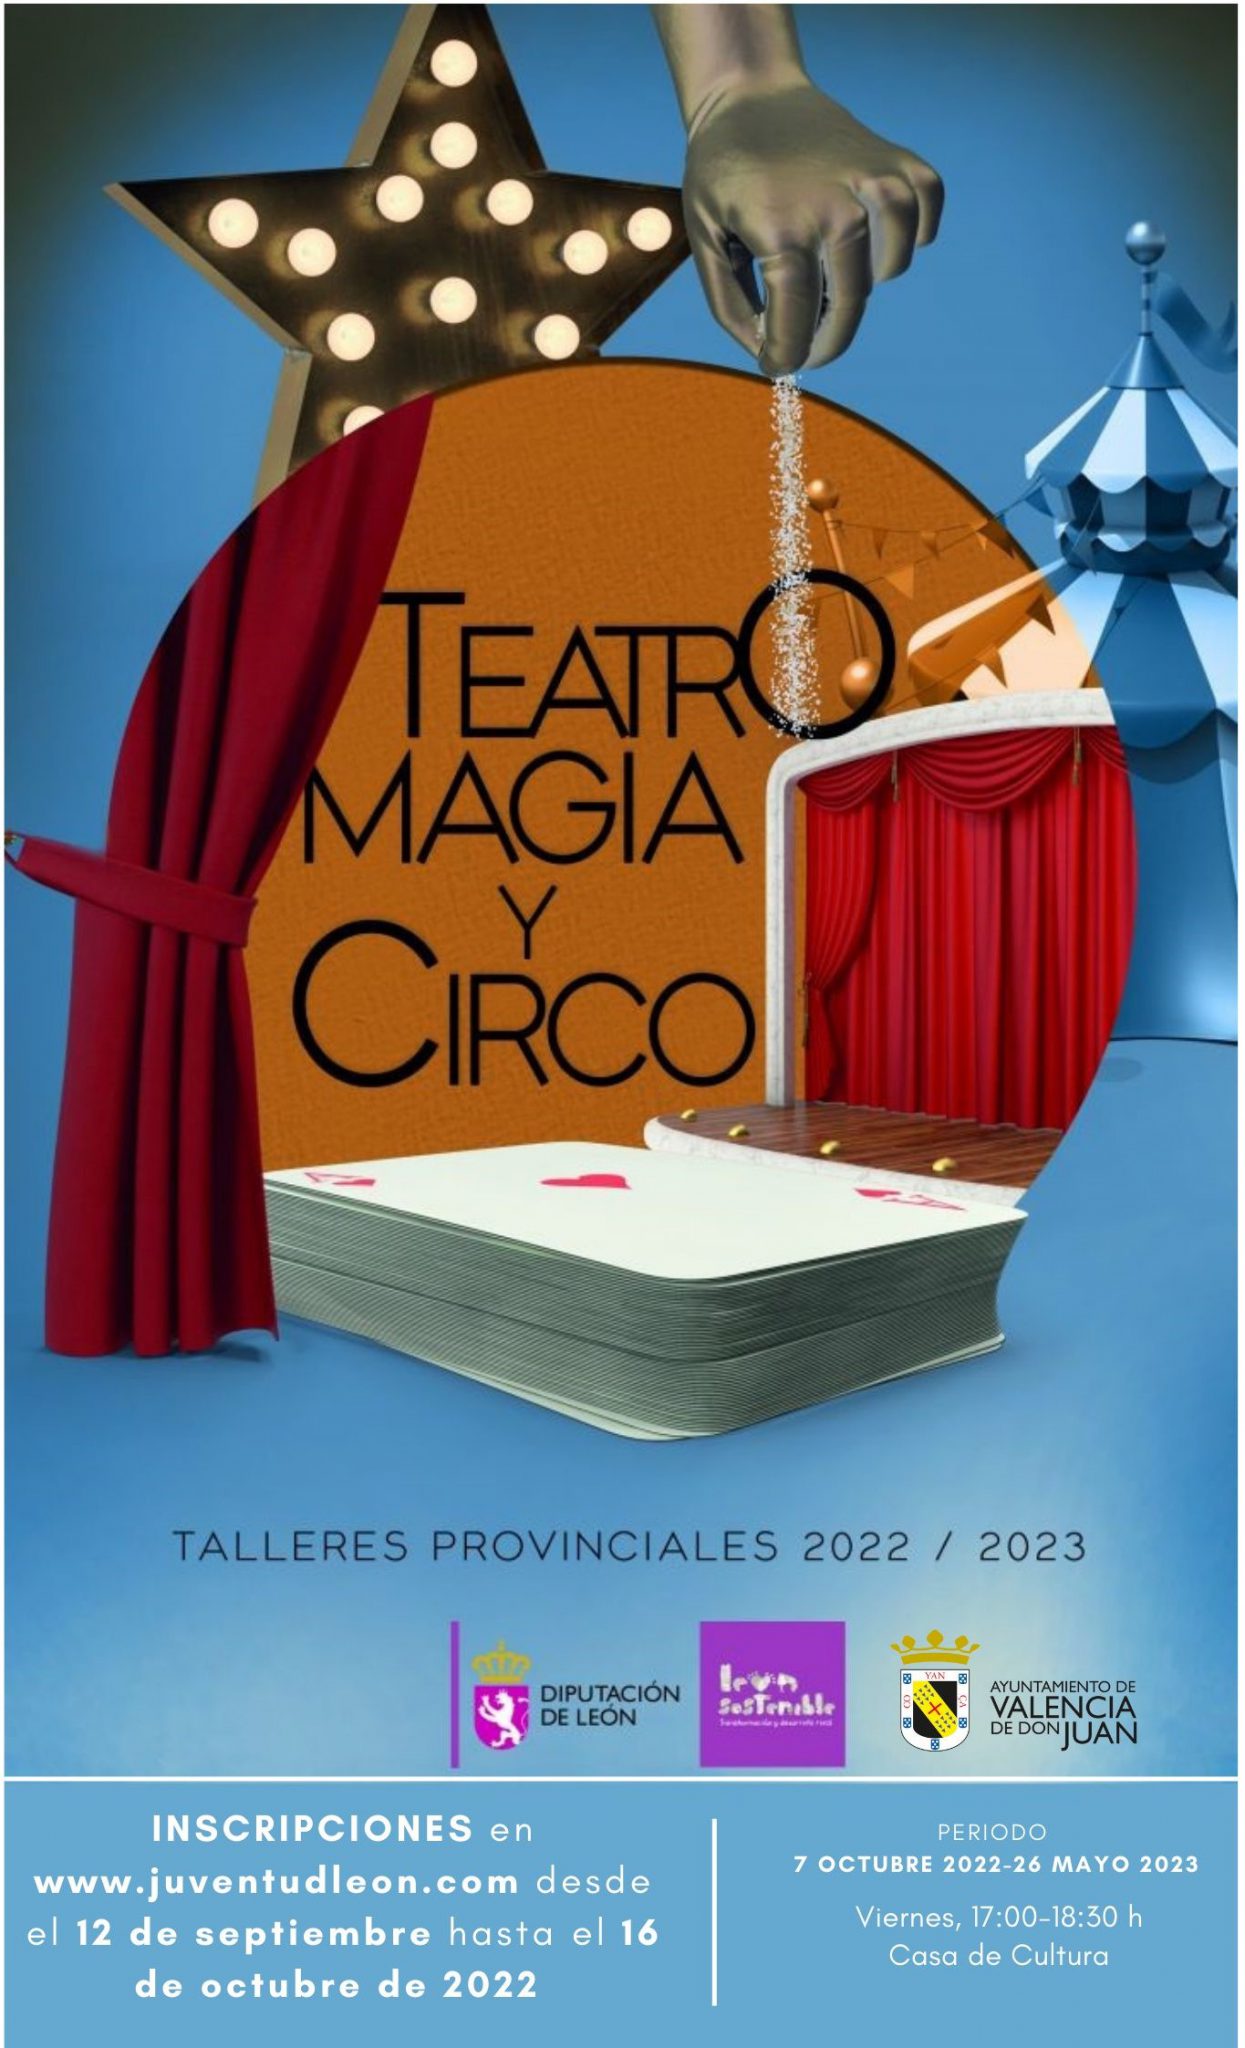 Teatro Magia y Circo. Talleres Provinciales 2022/2023